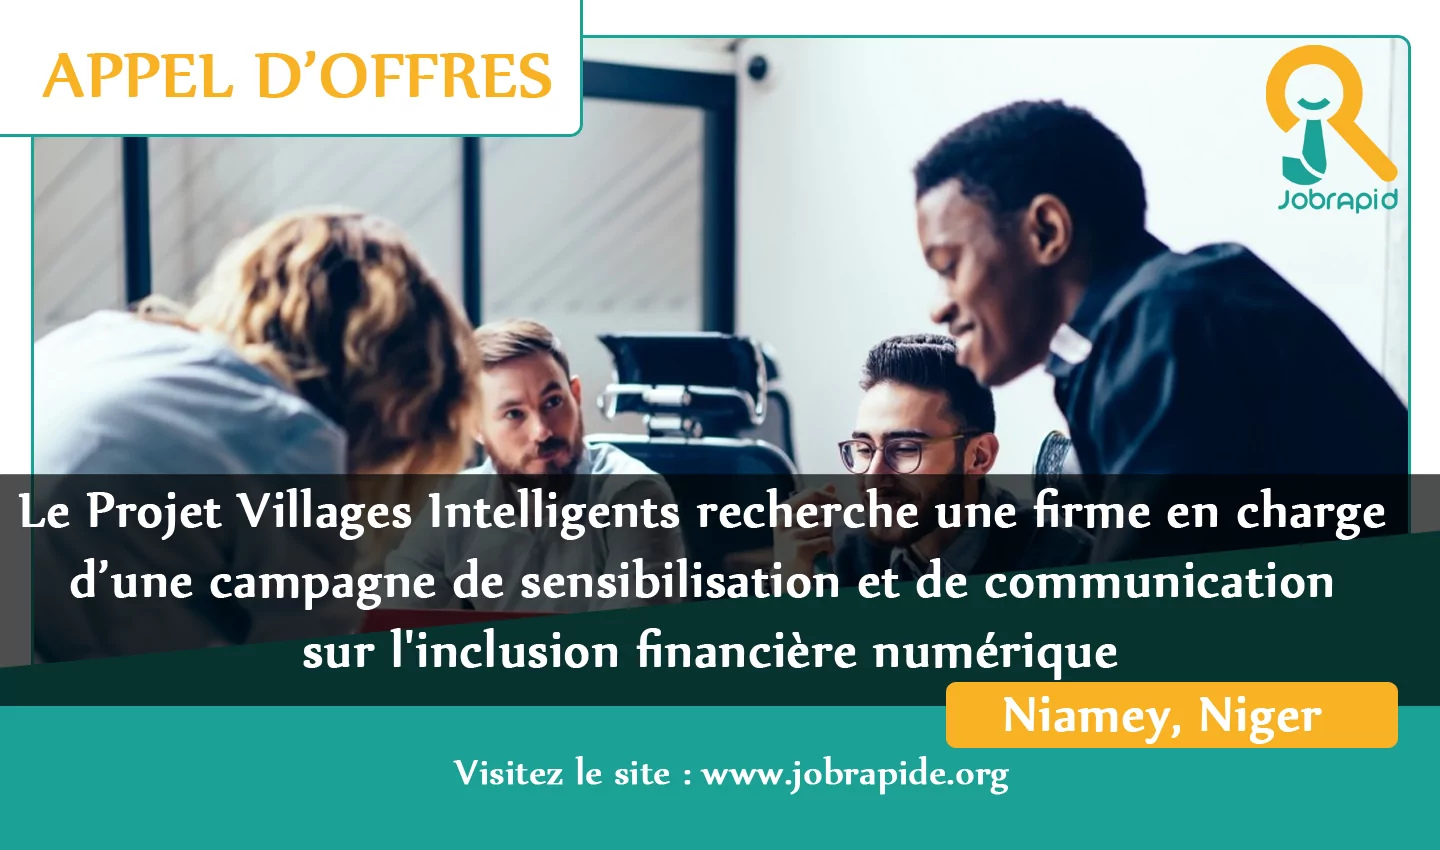 Le Projet Villages Intelligents recherche une firme en charge d’une campagne de sensibilisation et de communication sur l’inclusion financière numérique, Niamey, Niger